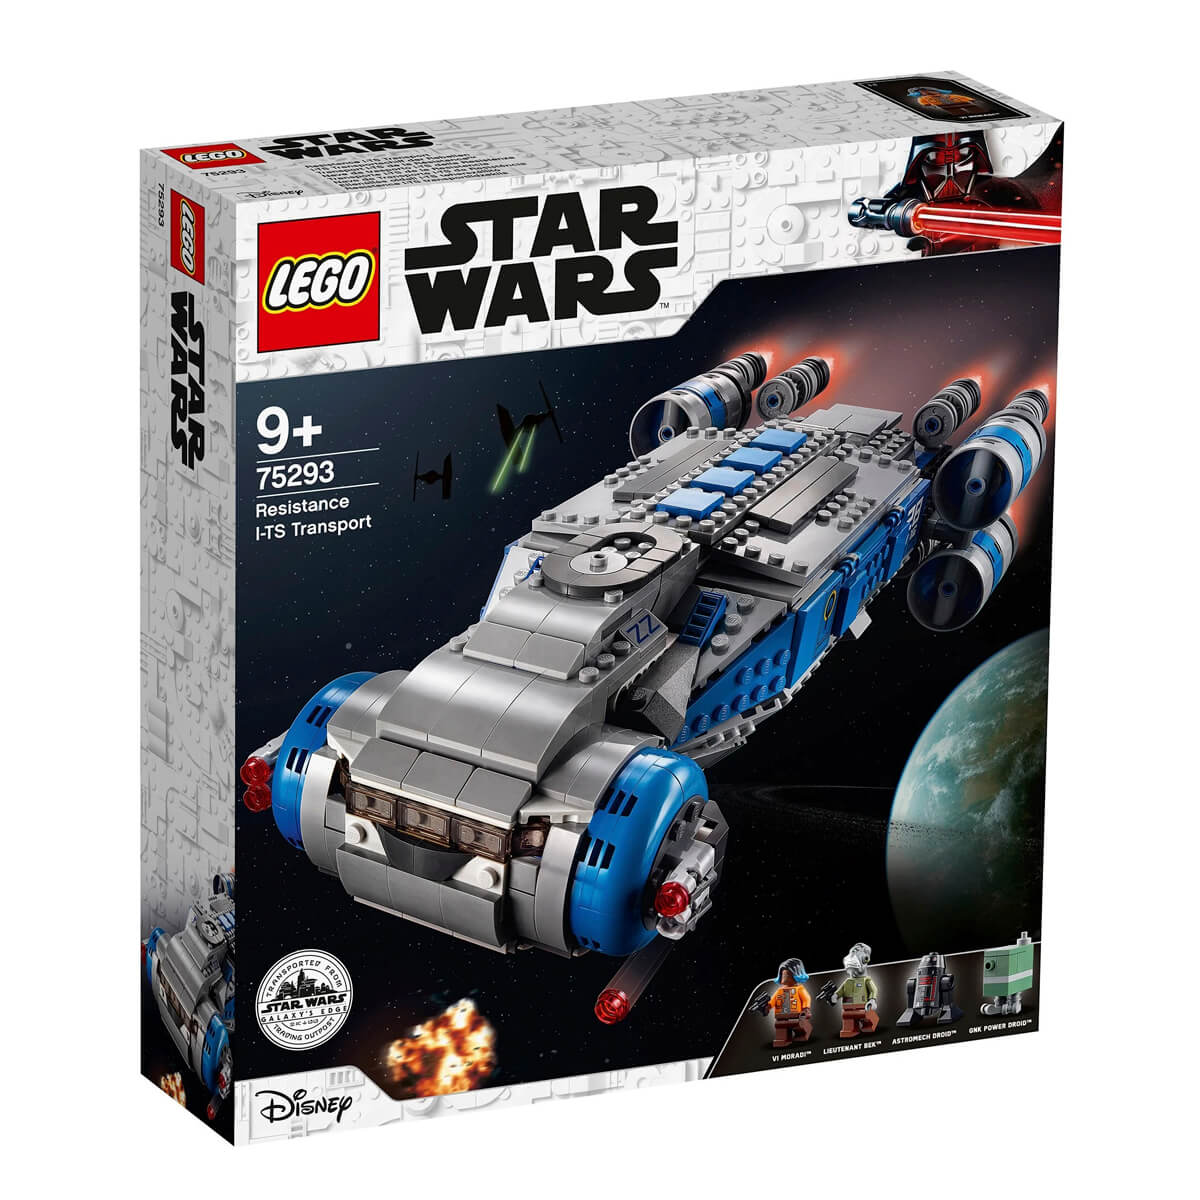 цена Конструктор LEGO Star Wars 75293 Транспортный корабль Сопротивления I-TS